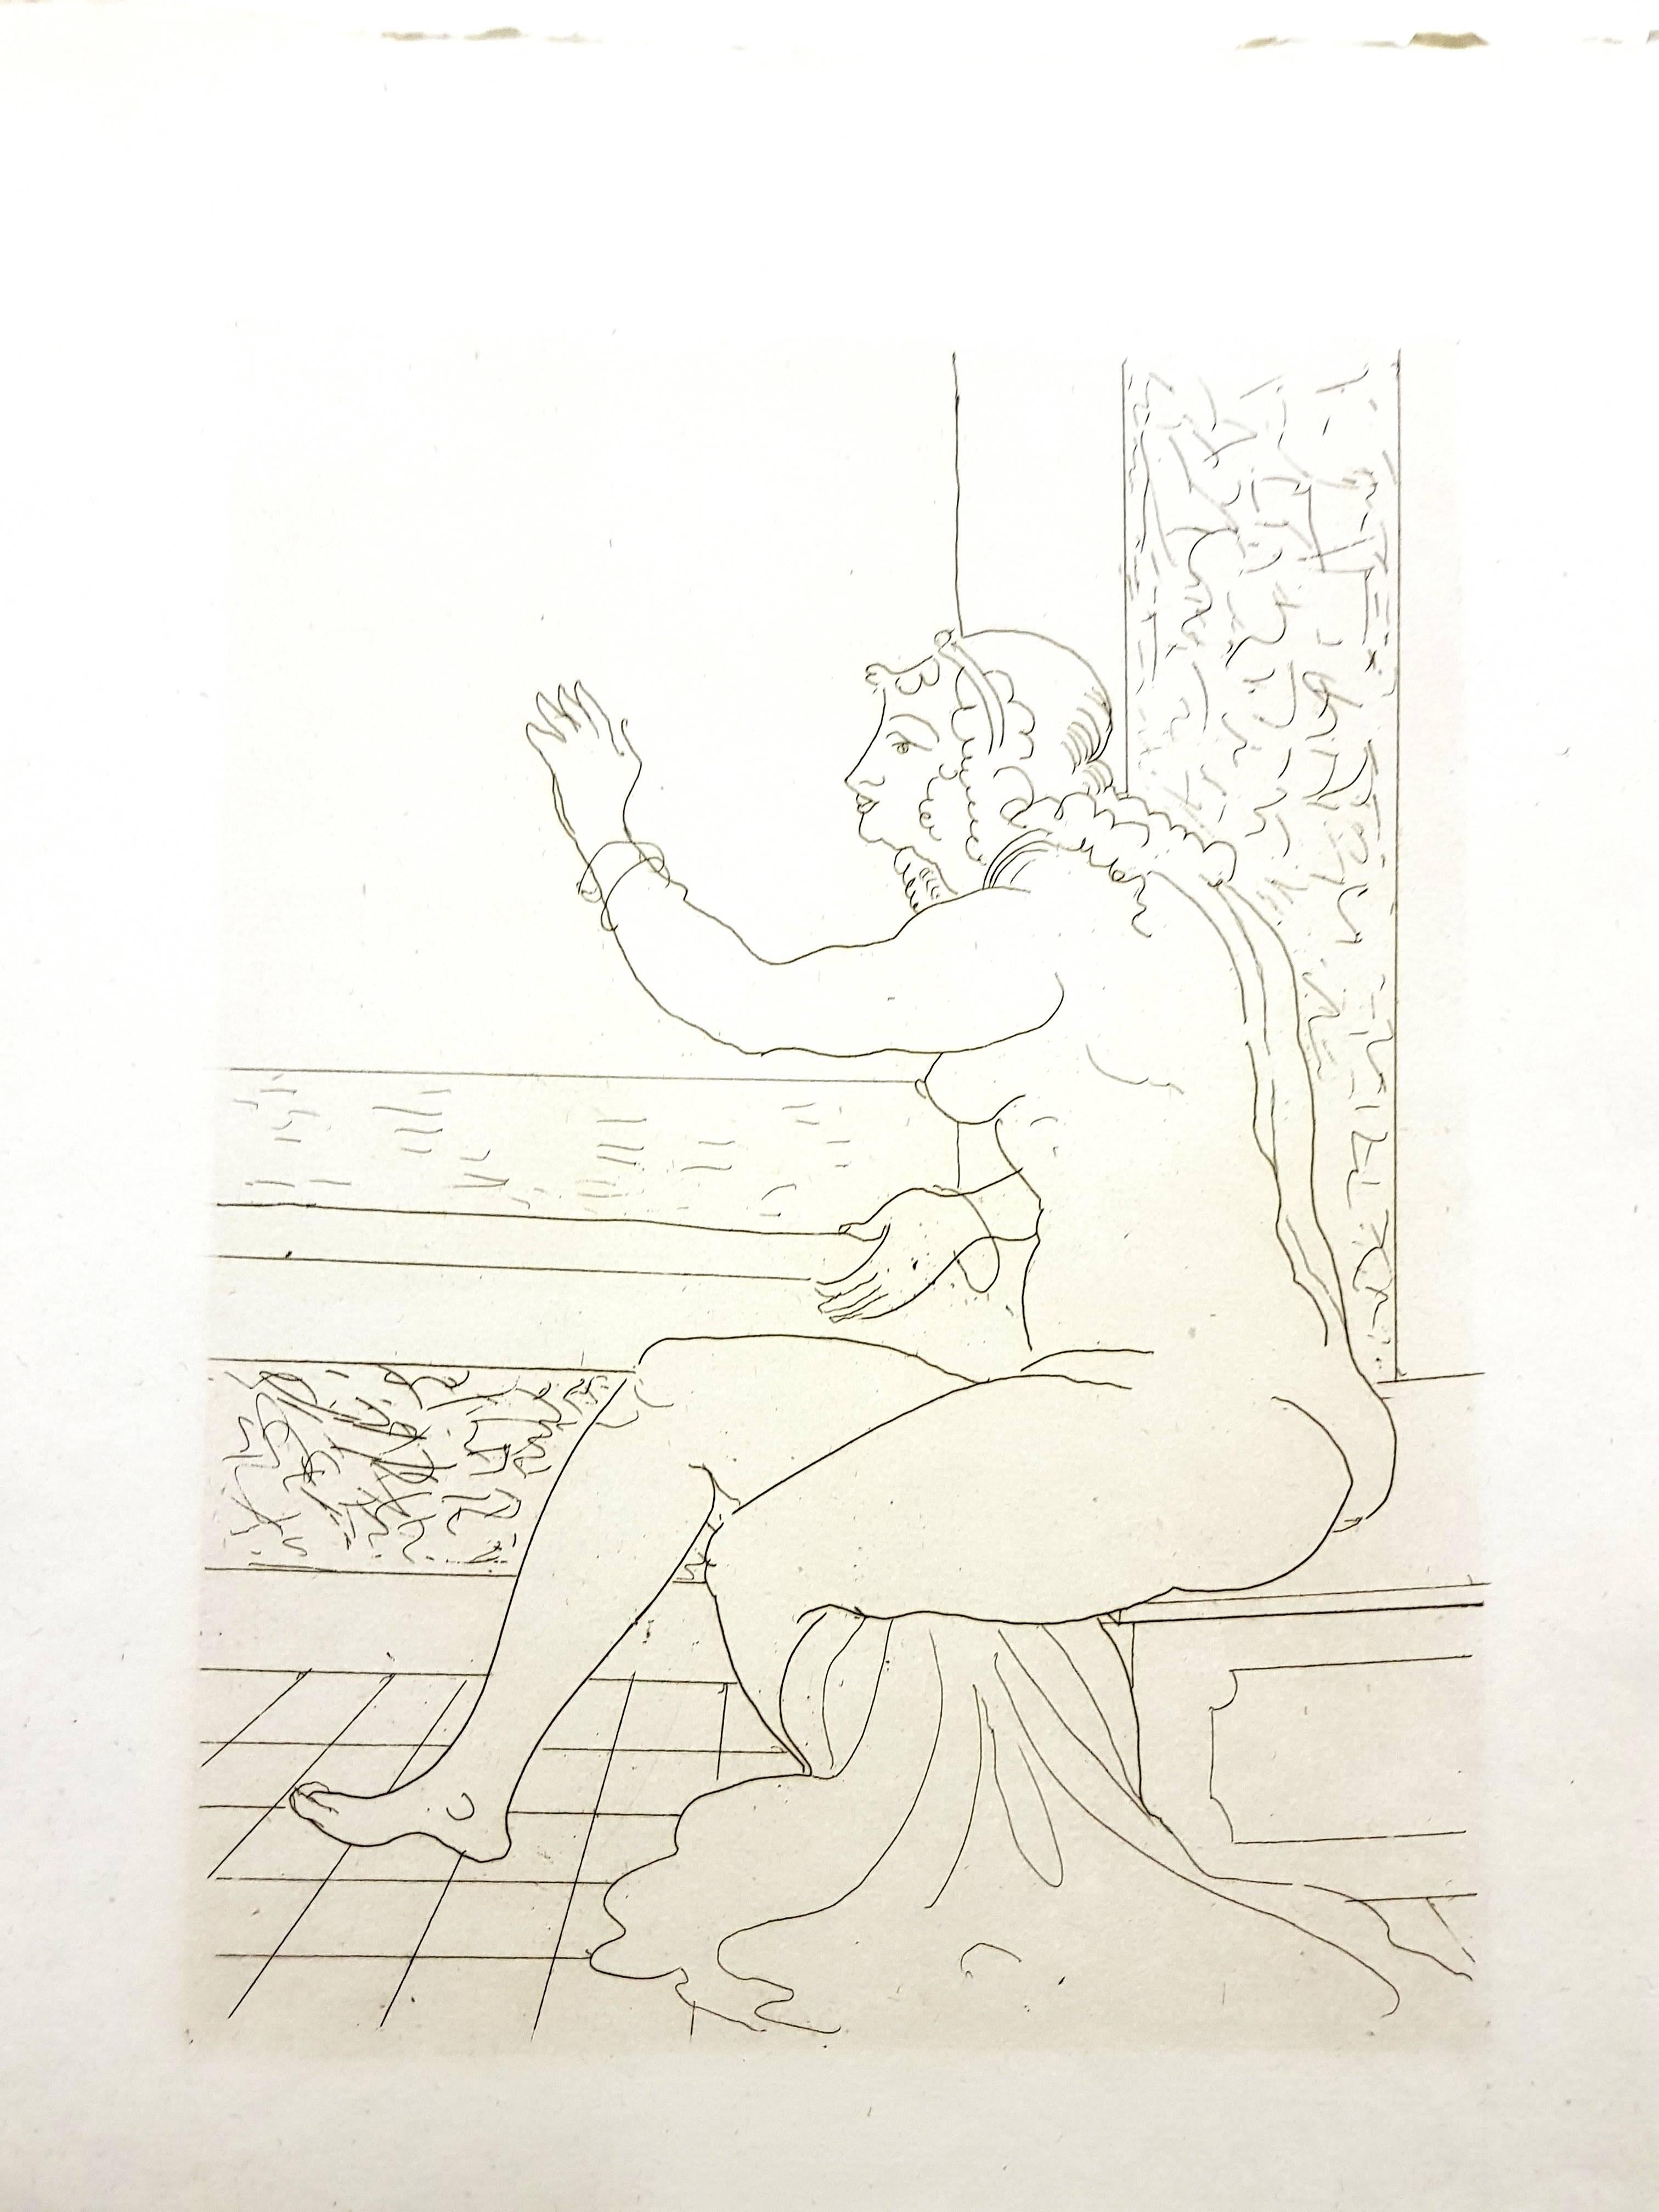 André Derain - Ovids Heroiden 
Original-Radierung
Auflage von 134
Abmessungen: 32 x 25 cm
Ovide [Marcel Prevost], Héroïdes, Paris, Société des Cent-une, 1938

Andre Derain wurde 1880 in Chatou, einer Künstlerkolonie außerhalb von Paris, geboren. Im